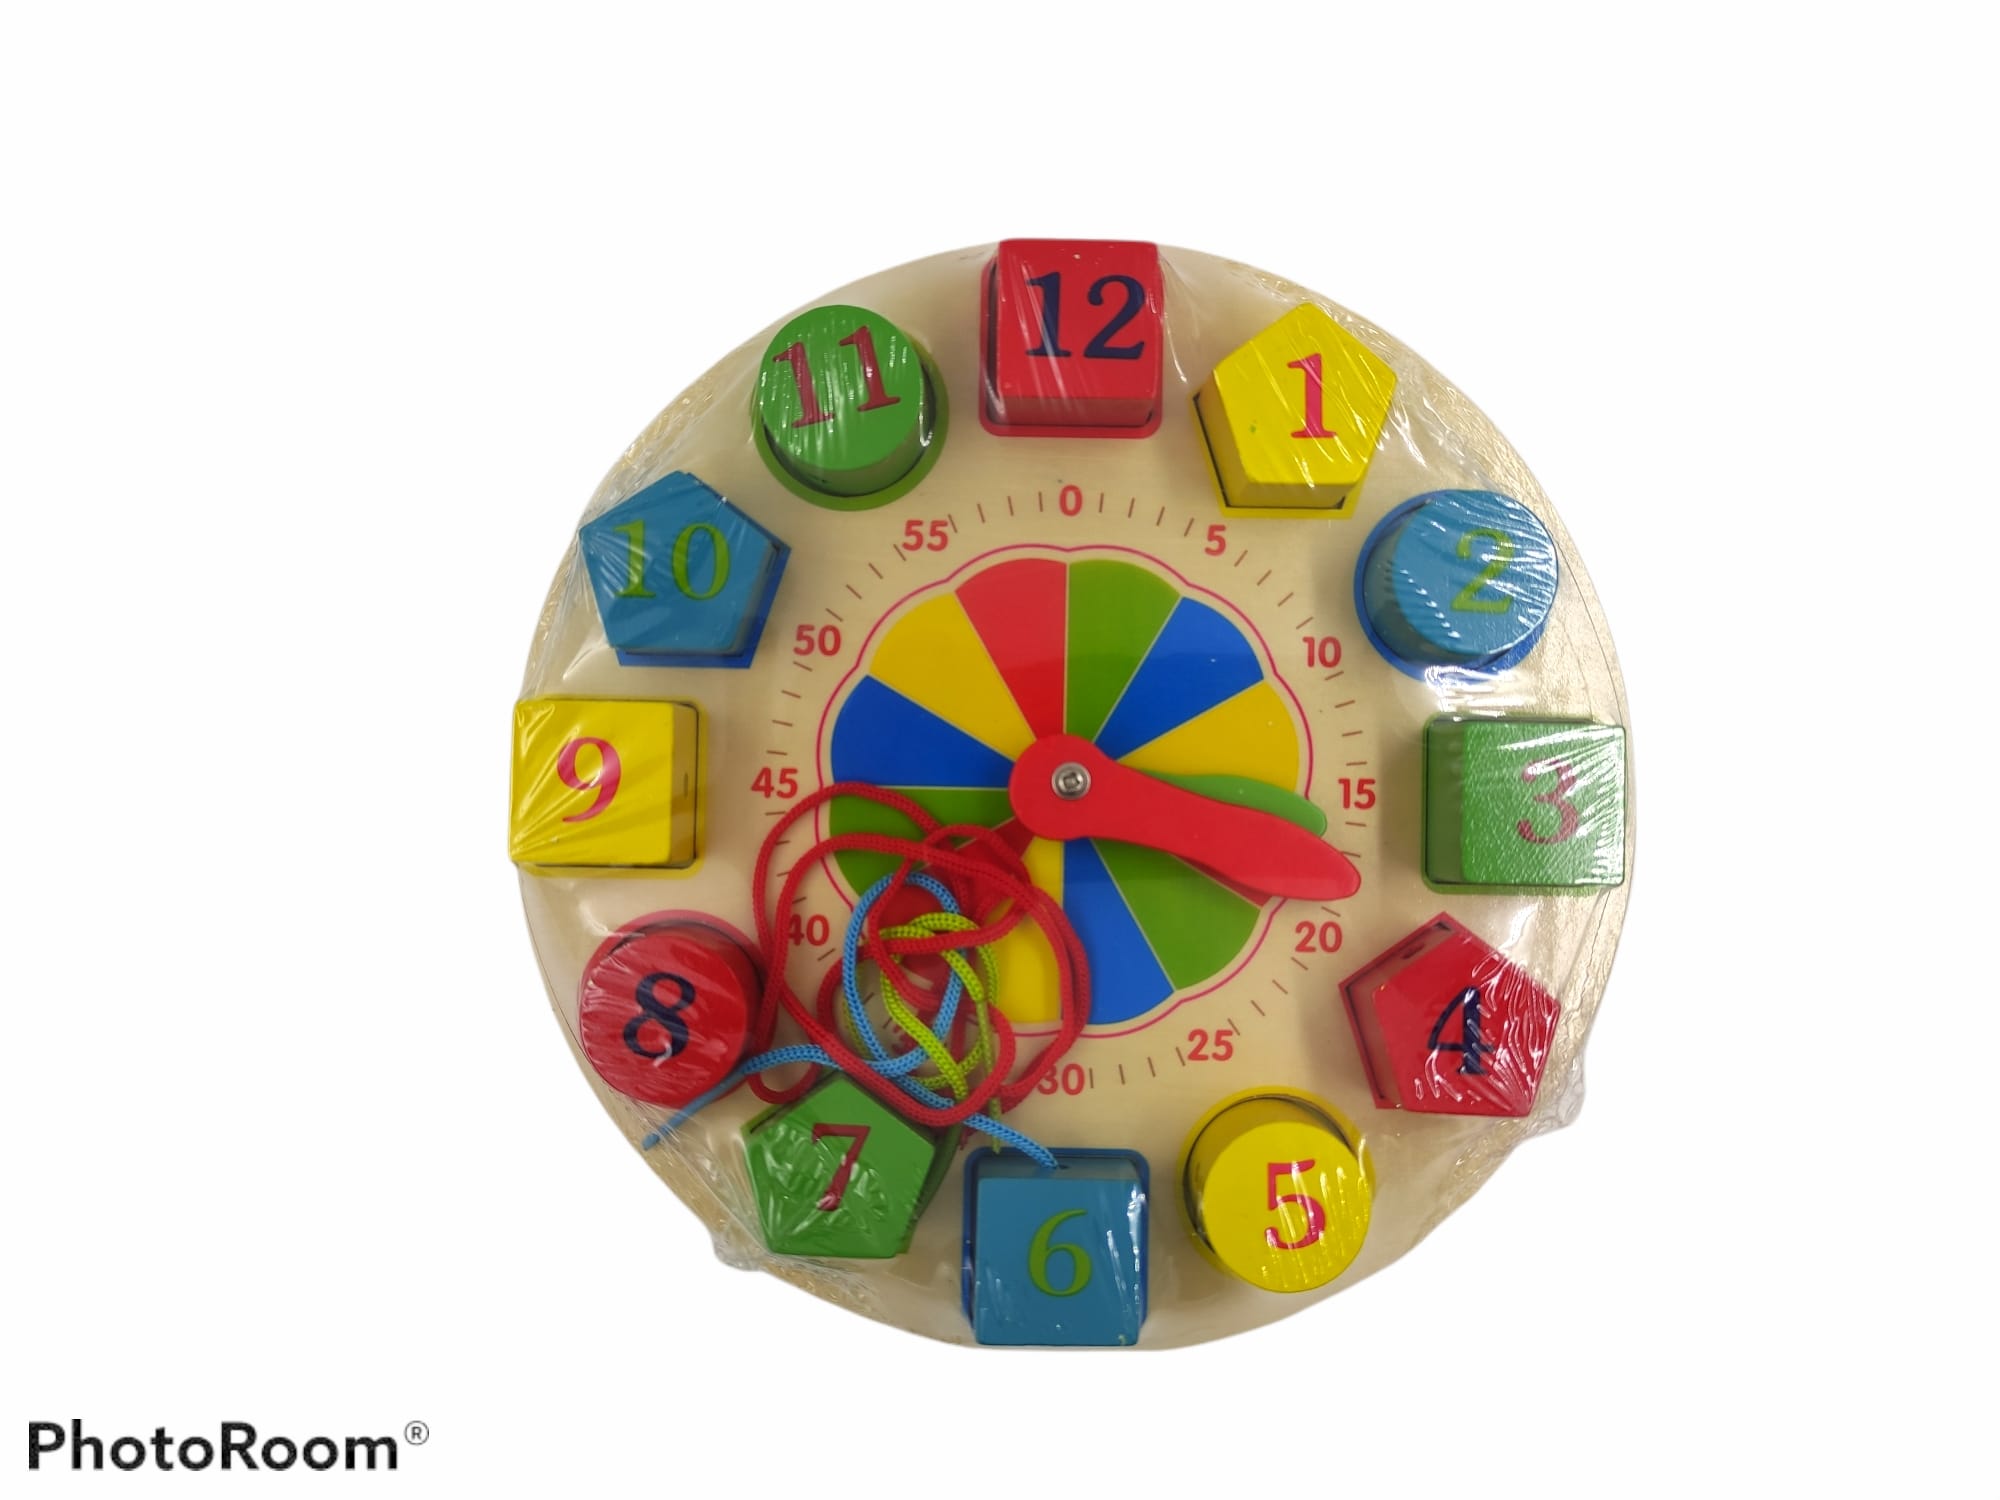 Reloj de enseñanza de madera para aprender los números, horas, colores y formas